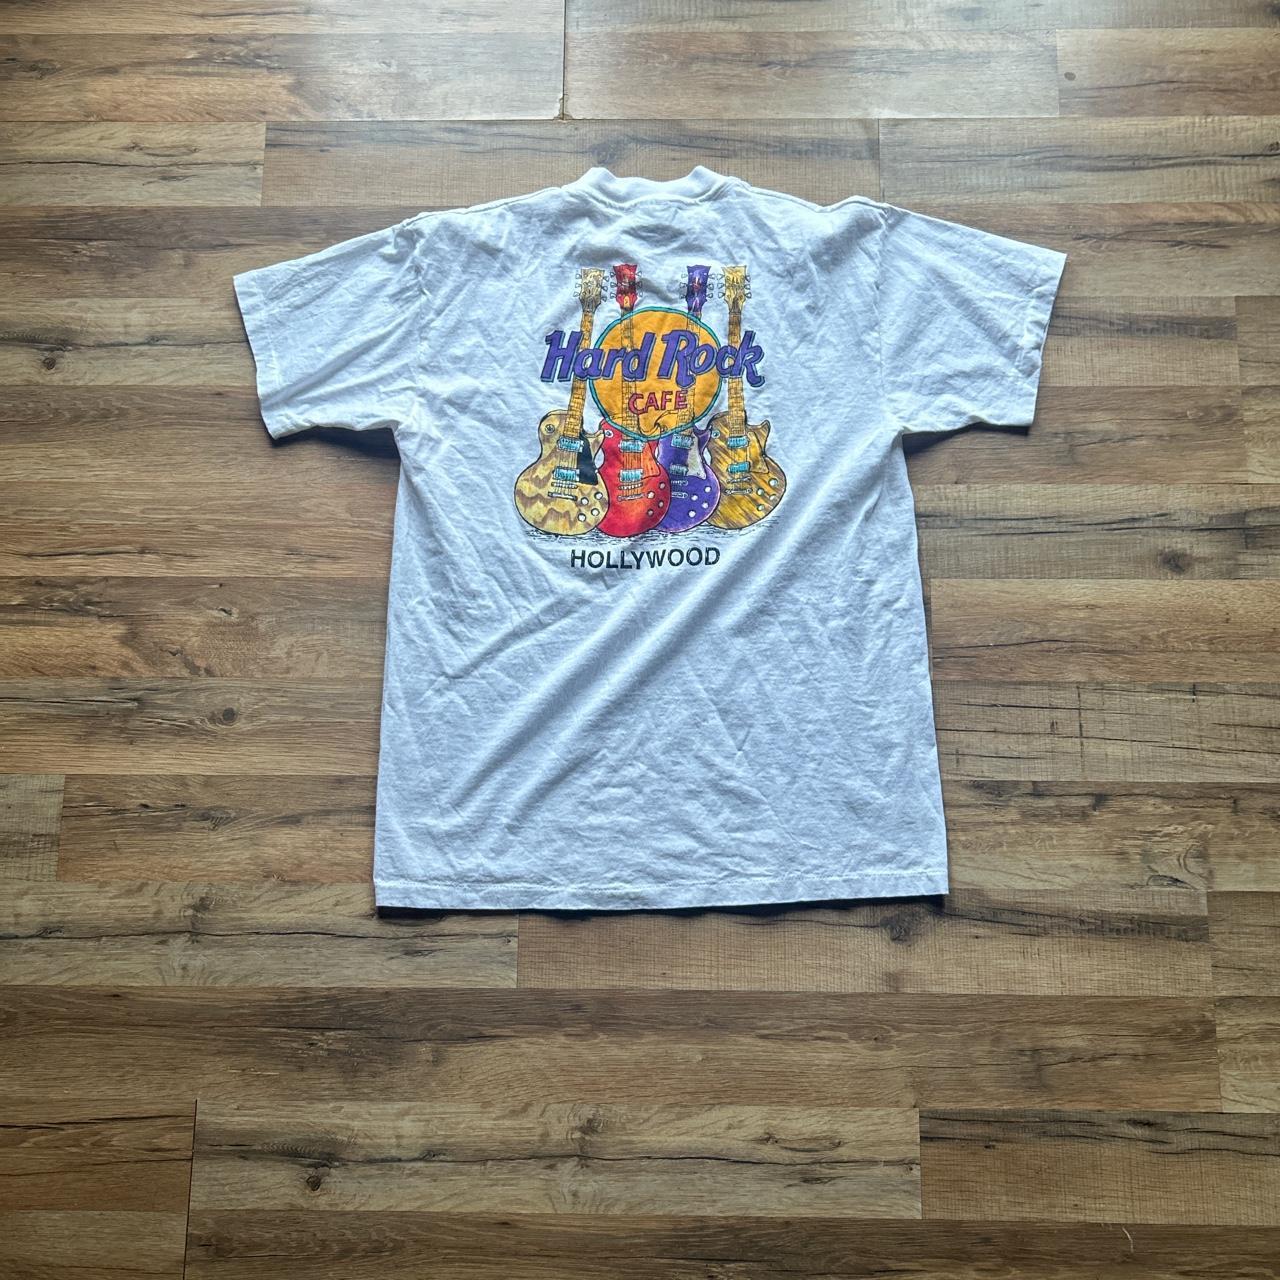 Vintage 1996 hard rock Hollywood t shirt - Depop